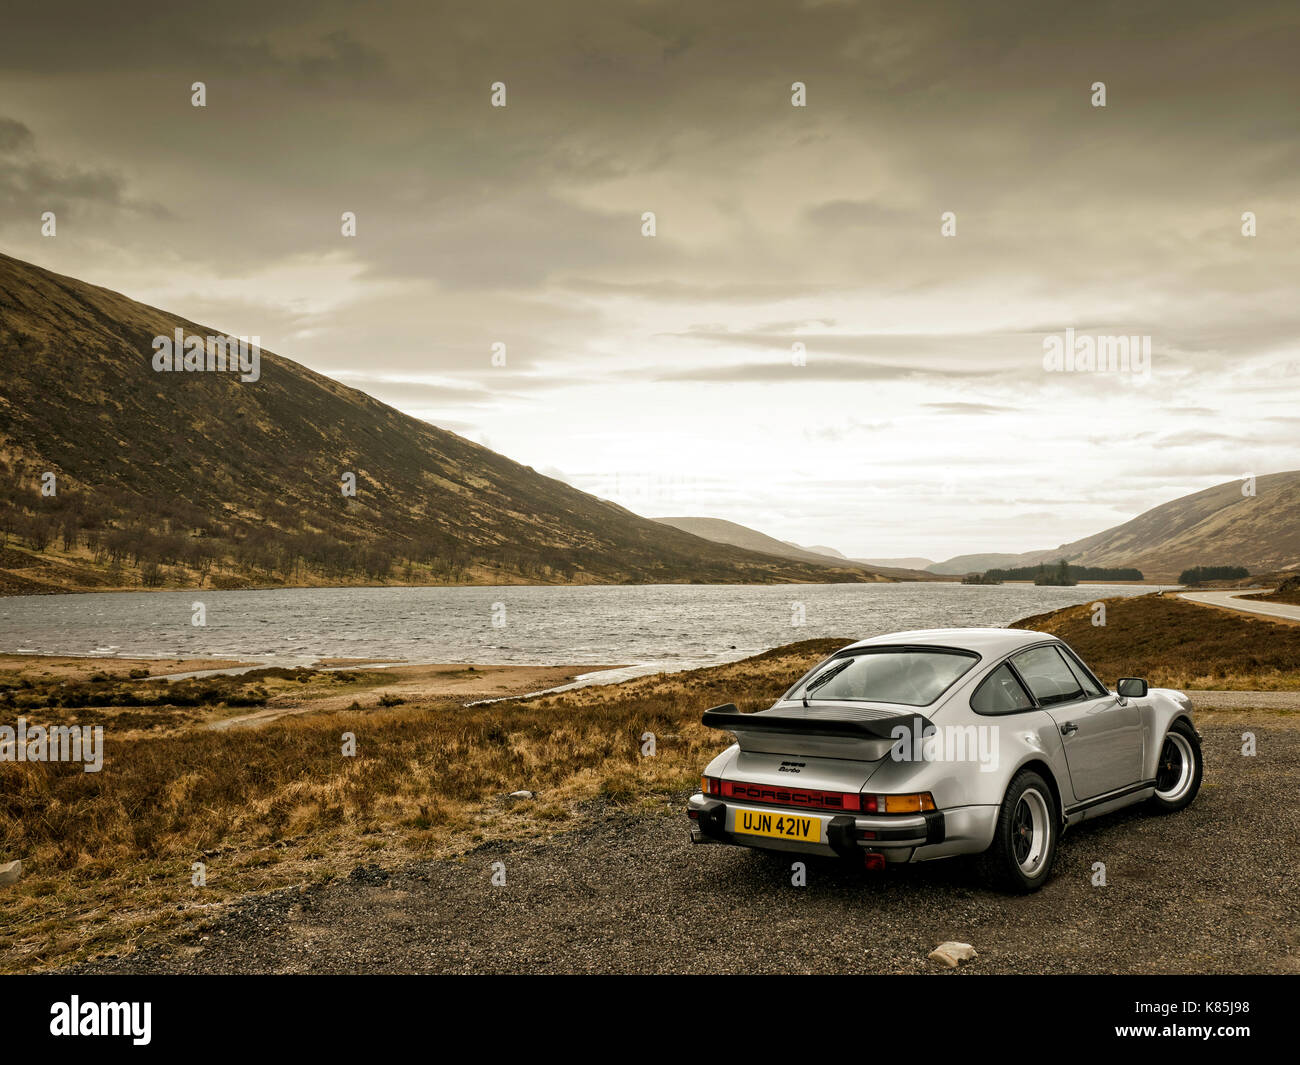 1979 Porsche 911 turbo sulla costa nord 500 route Scozia Scotland Foto Stock